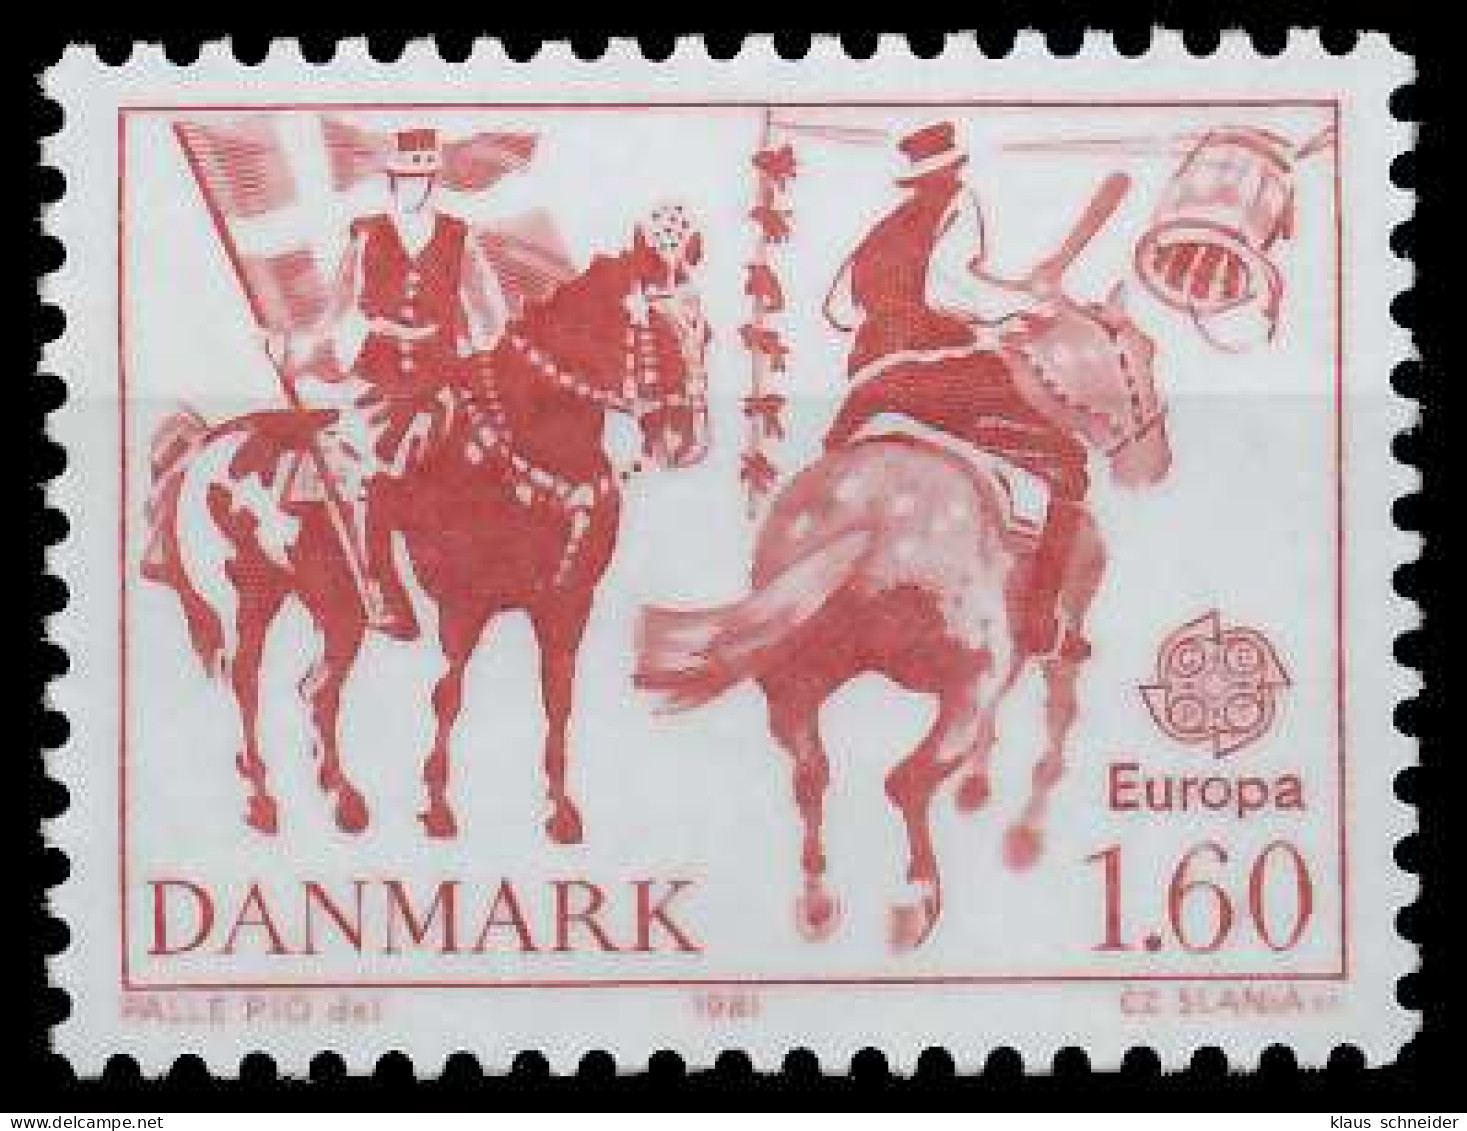 DÄNEMARK 1981 Nr 730 Postfrisch X5A00E2 - Unused Stamps